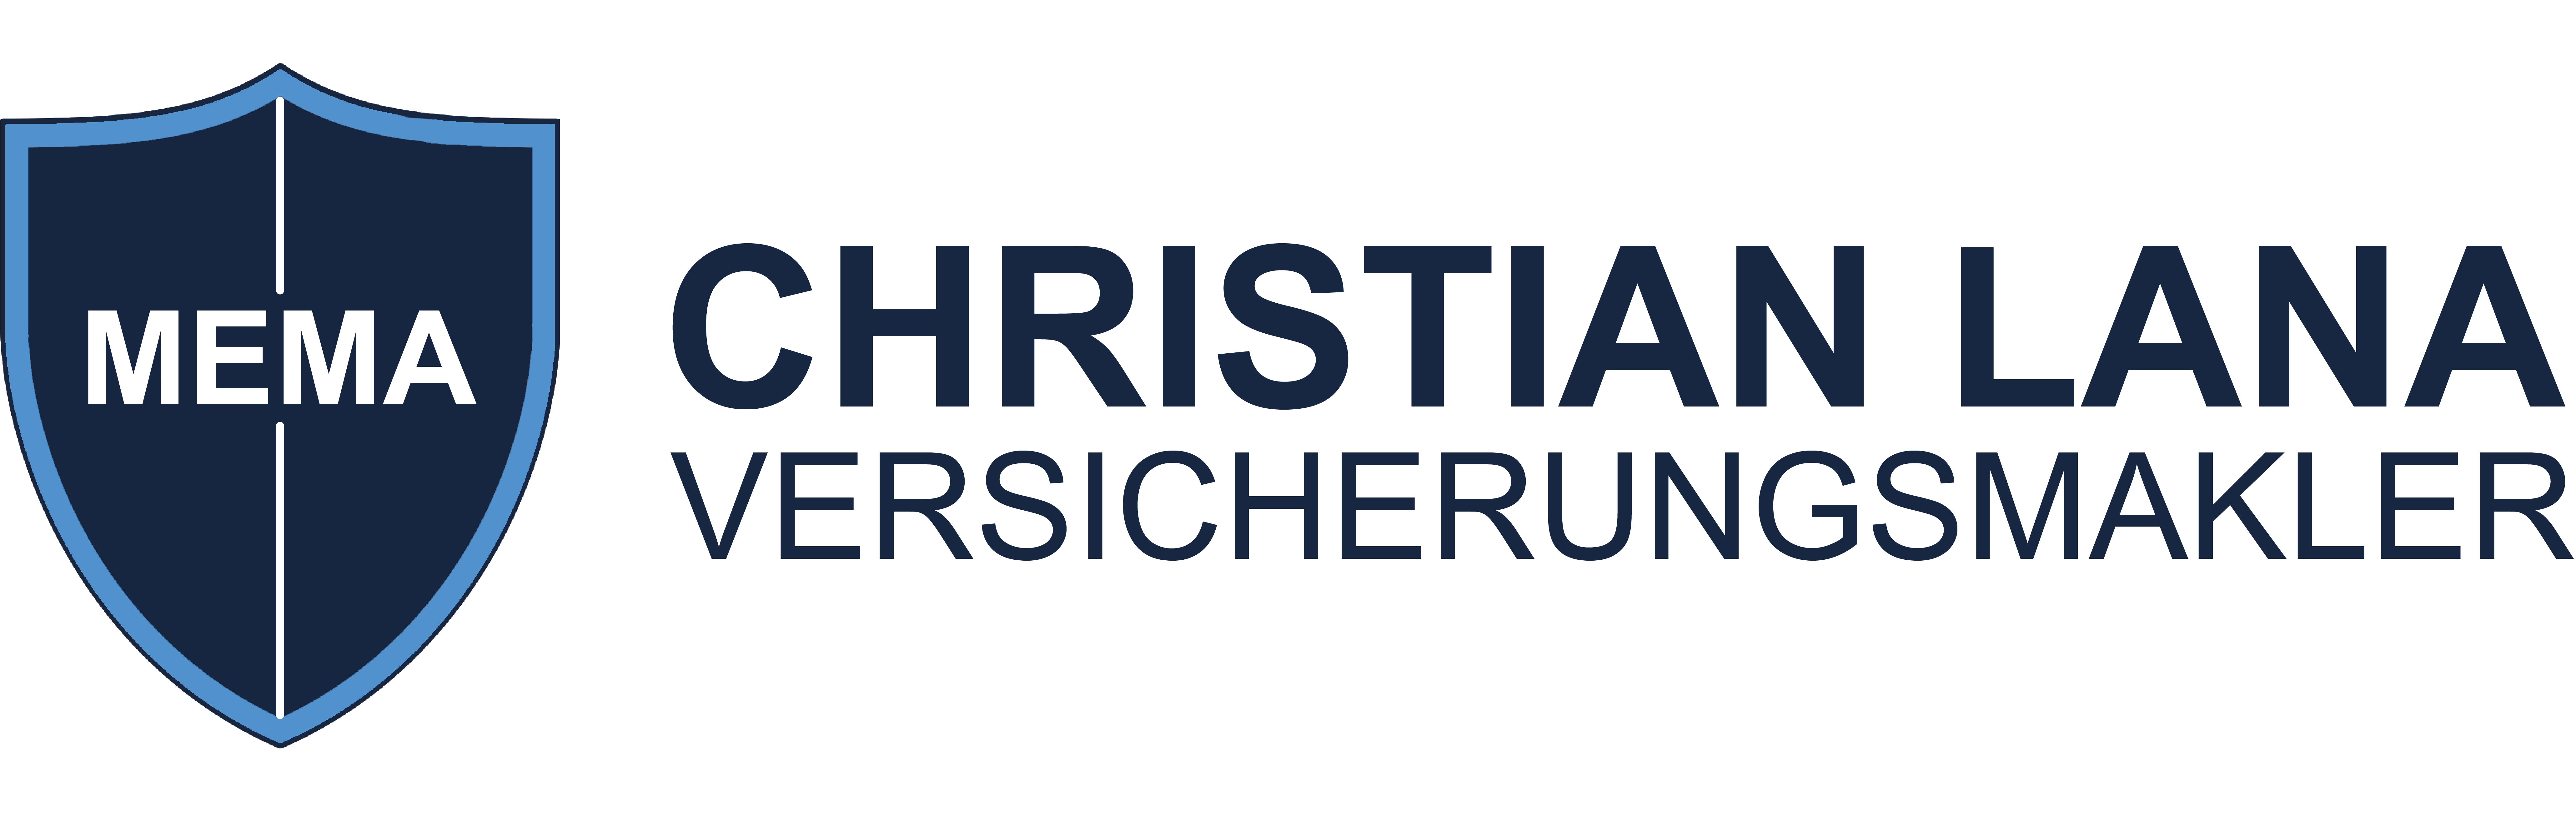 Logo des Versicherungsmaklers Christian Lana mit einem blauen Schutzschild und einen Telefon Icon.